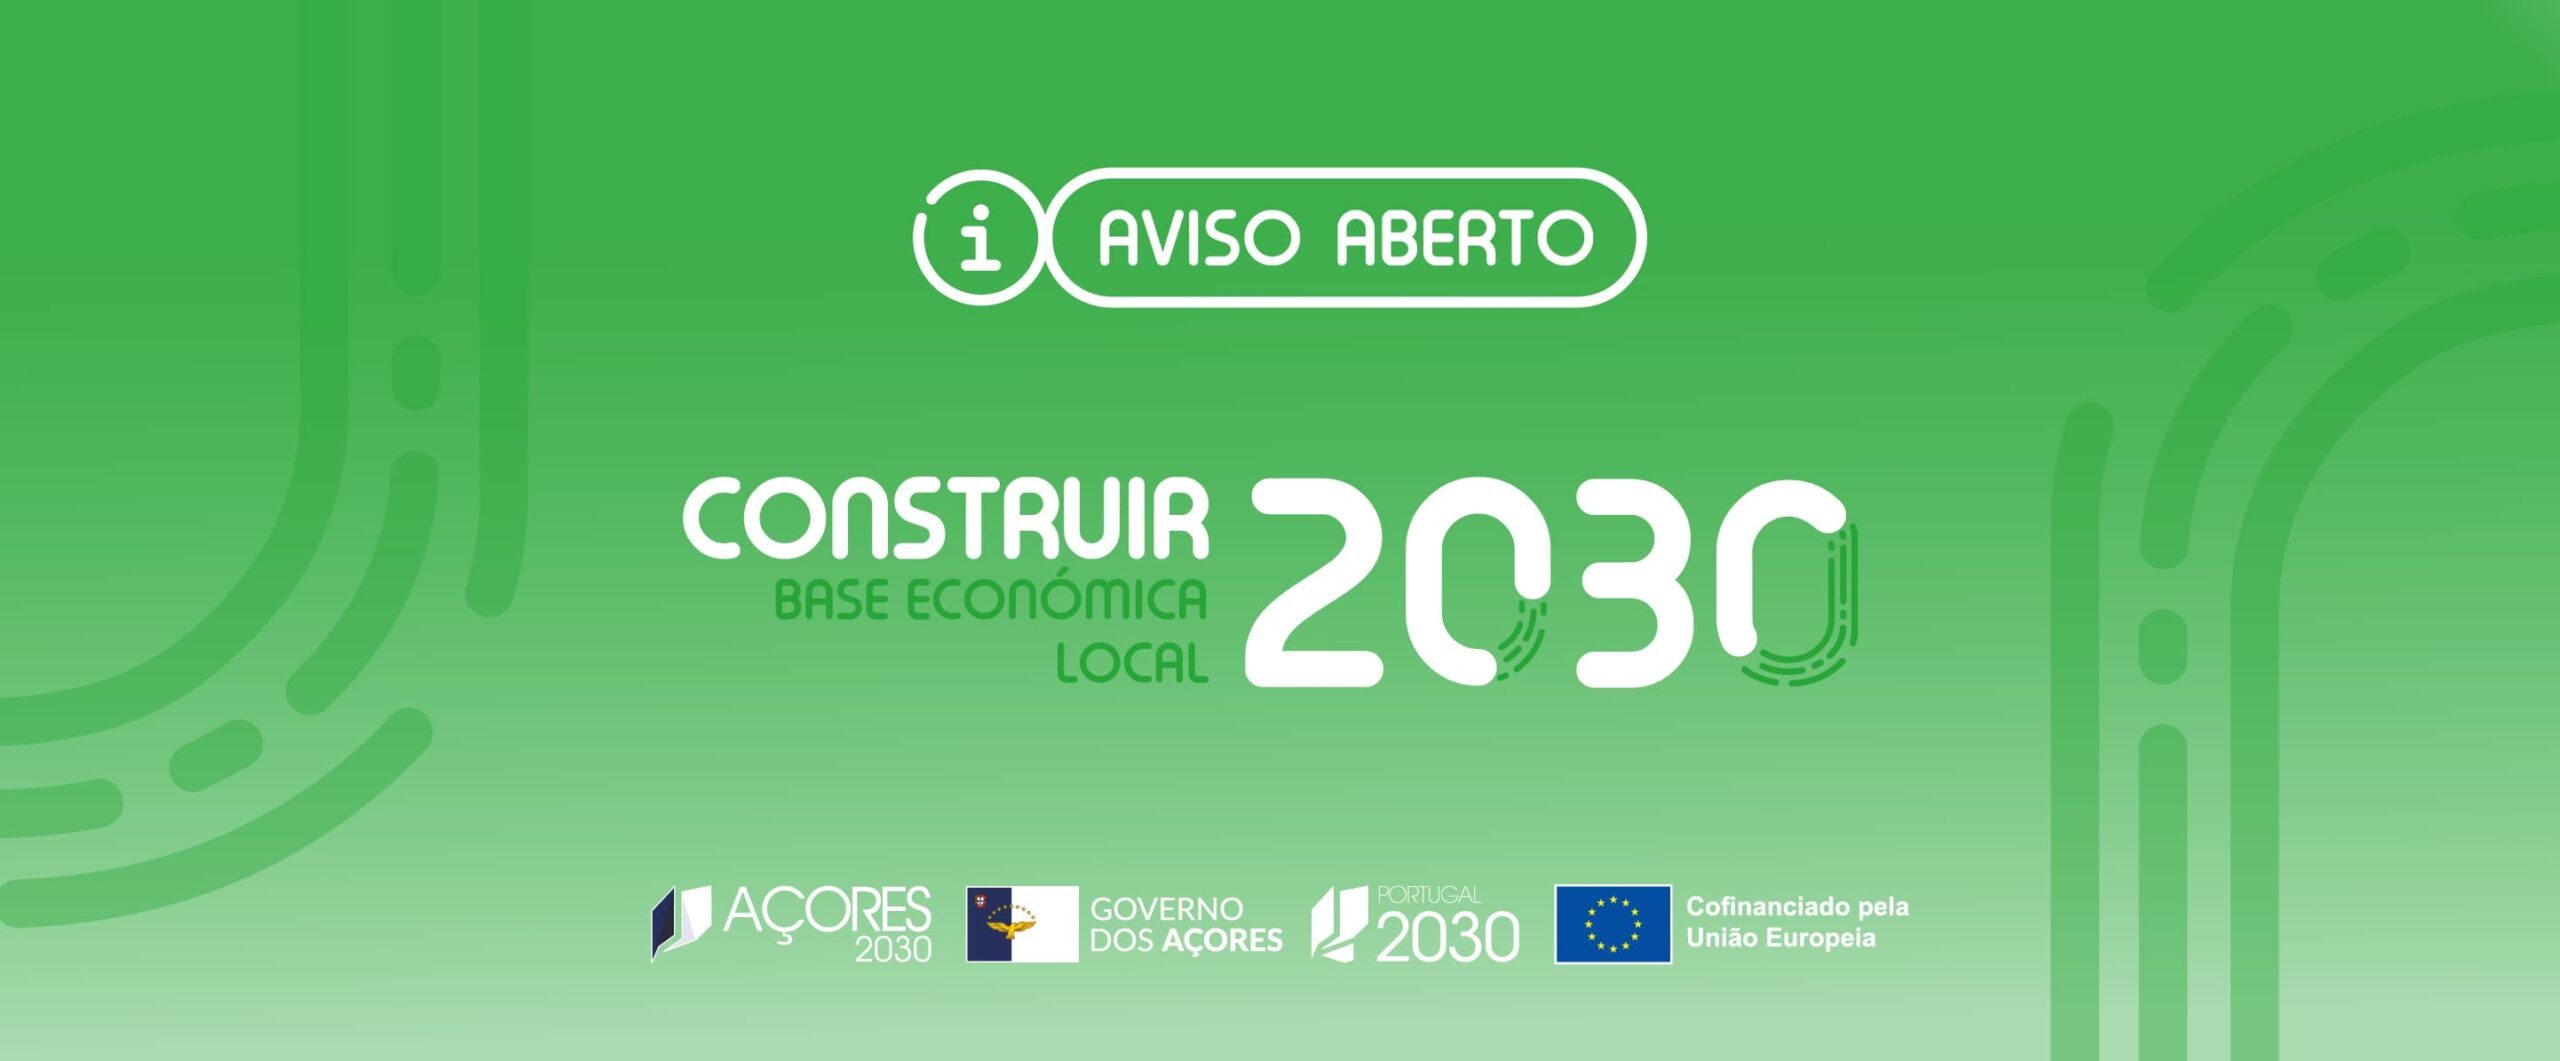 Construir 2030 | Aviso Aberto – Base Económica Local